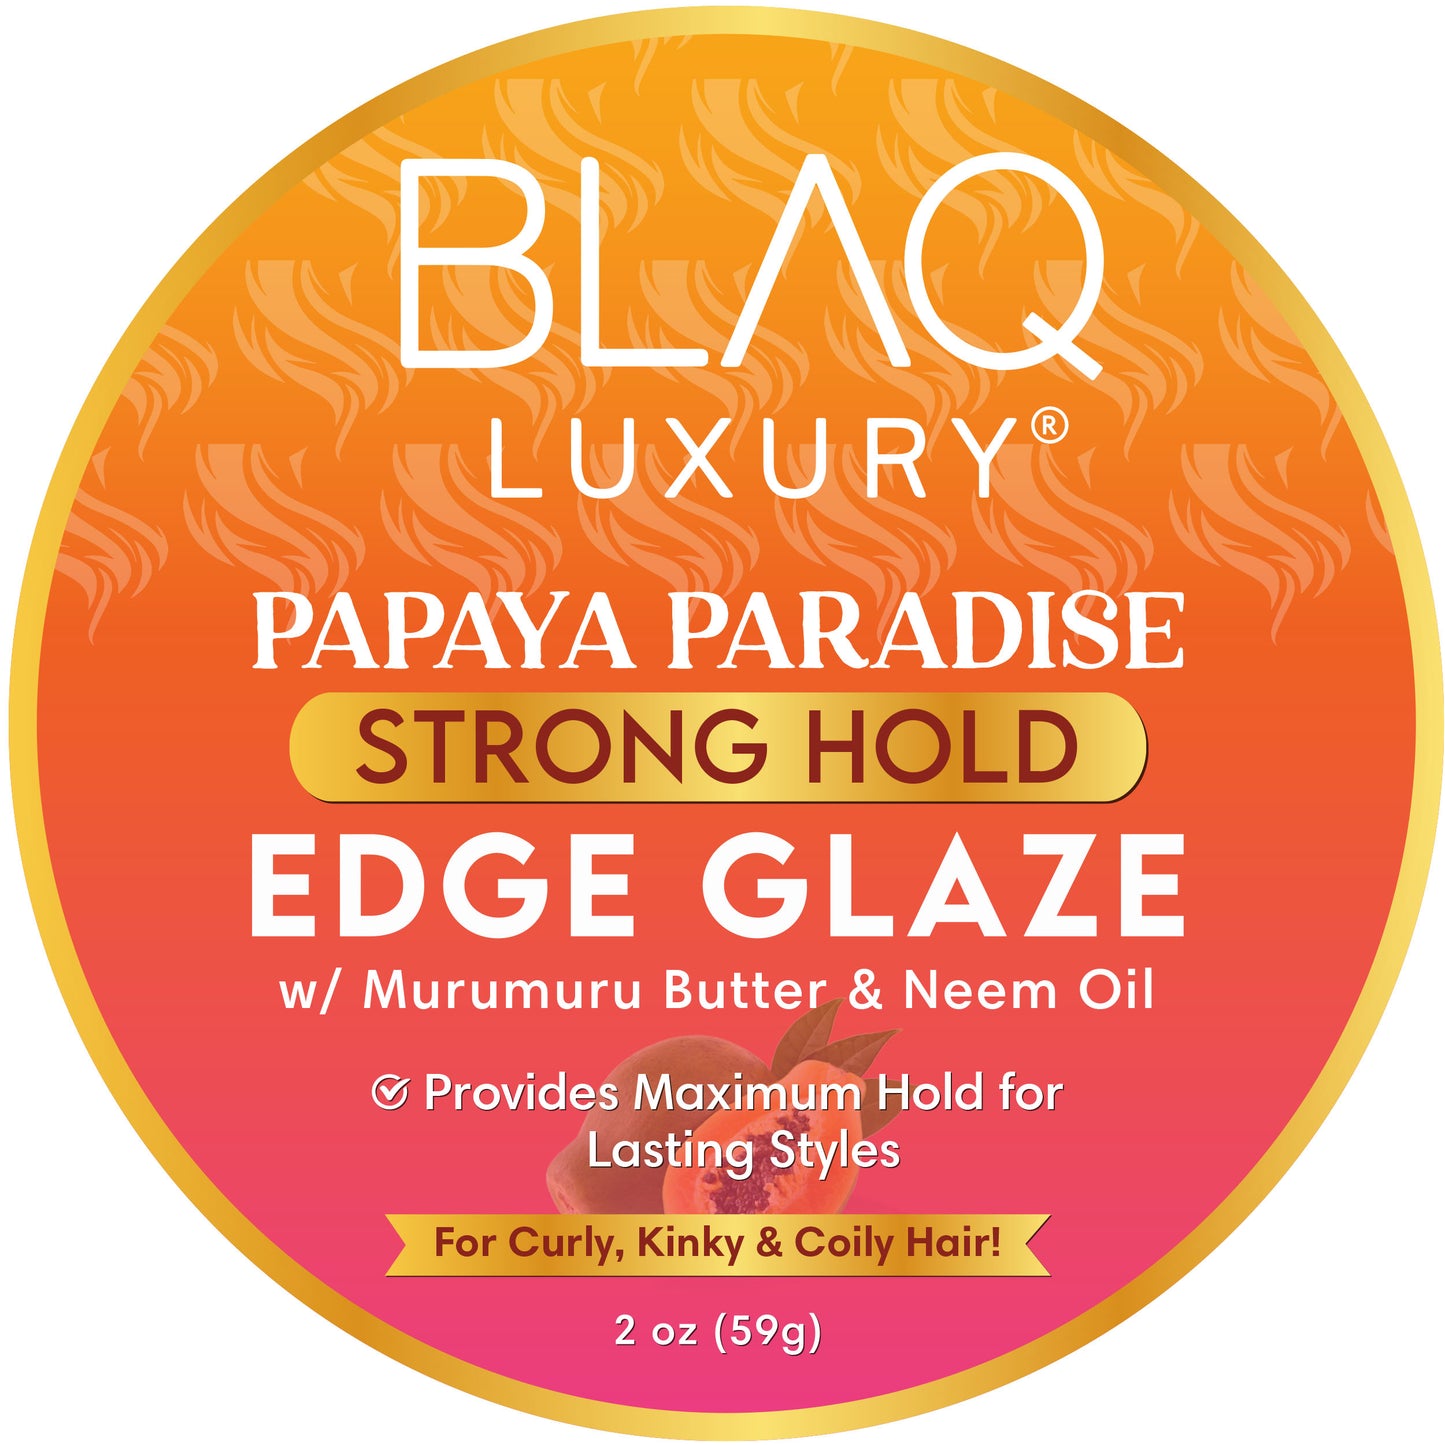 Papaya Paradise Strong Hold Edge Glaze